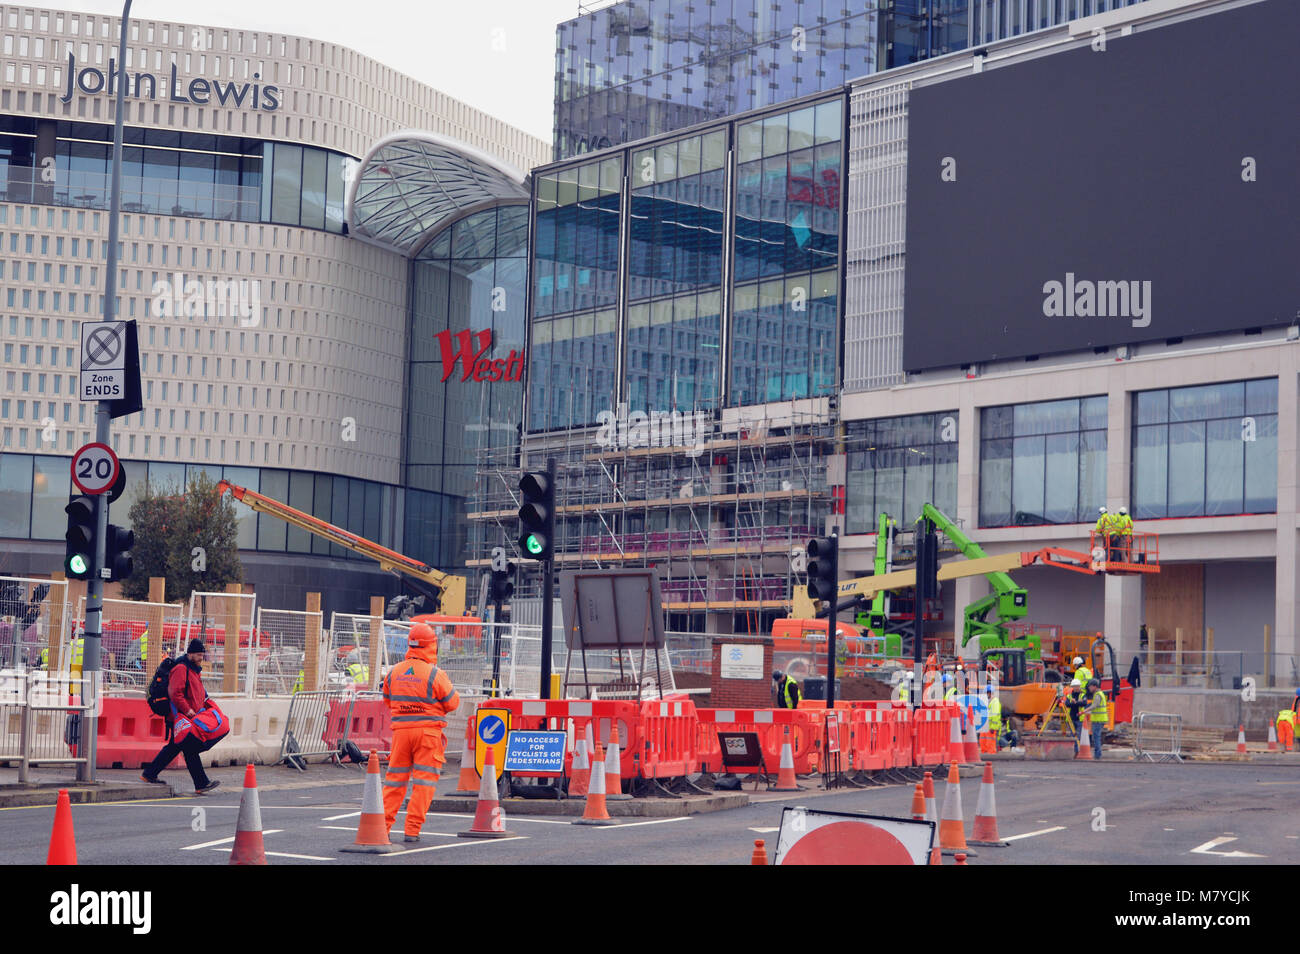 La construcción en curso de extensión para el centro comercial Westfield, White City de Londres, incluyendo nuevos almacenes John Lewis Foto de stock